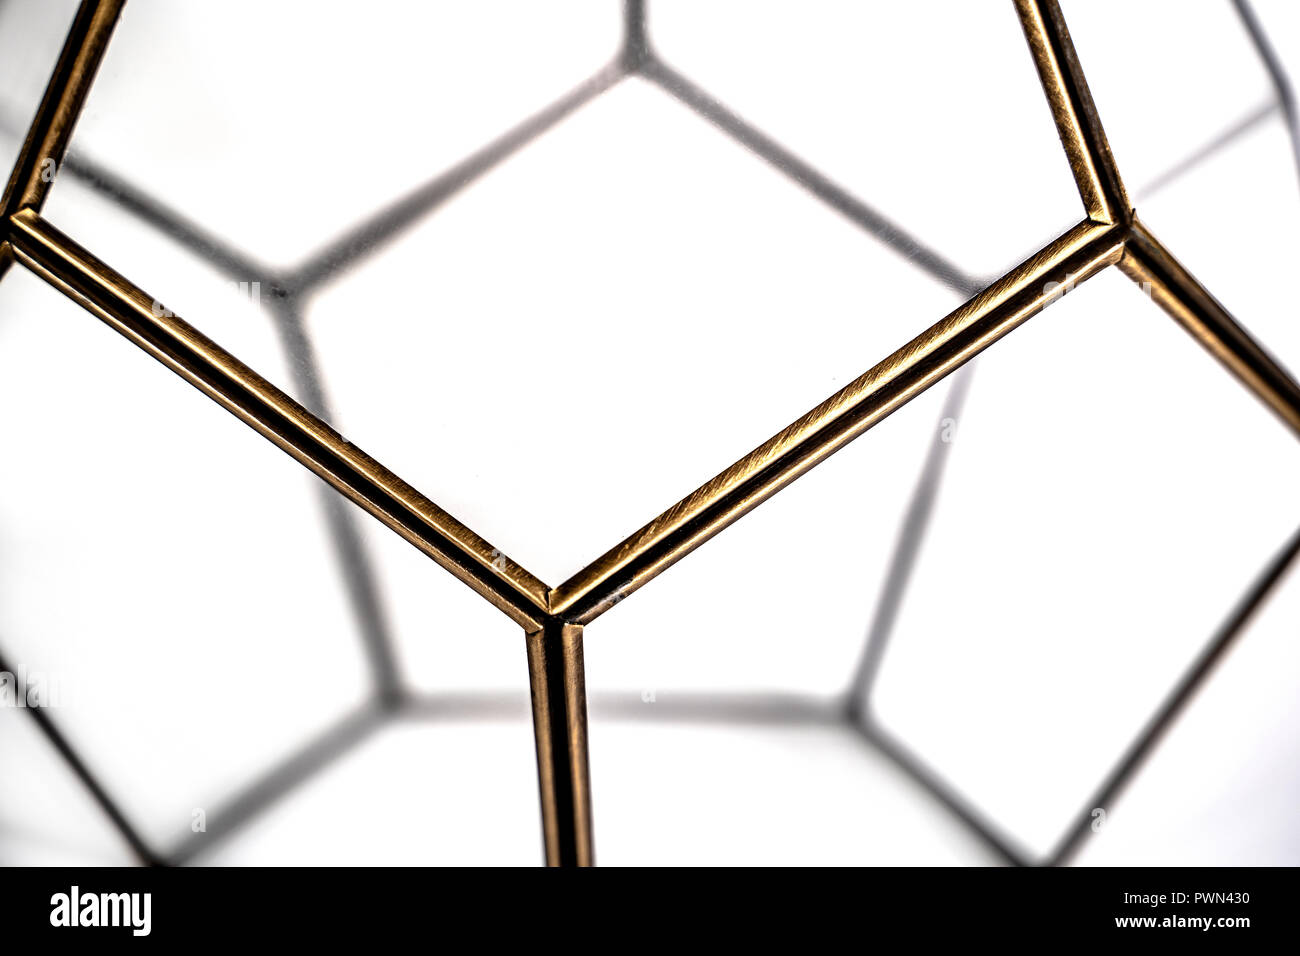 Dodécaèdre 3D, la forme et la structure géométrique abstraite Banque D'Images